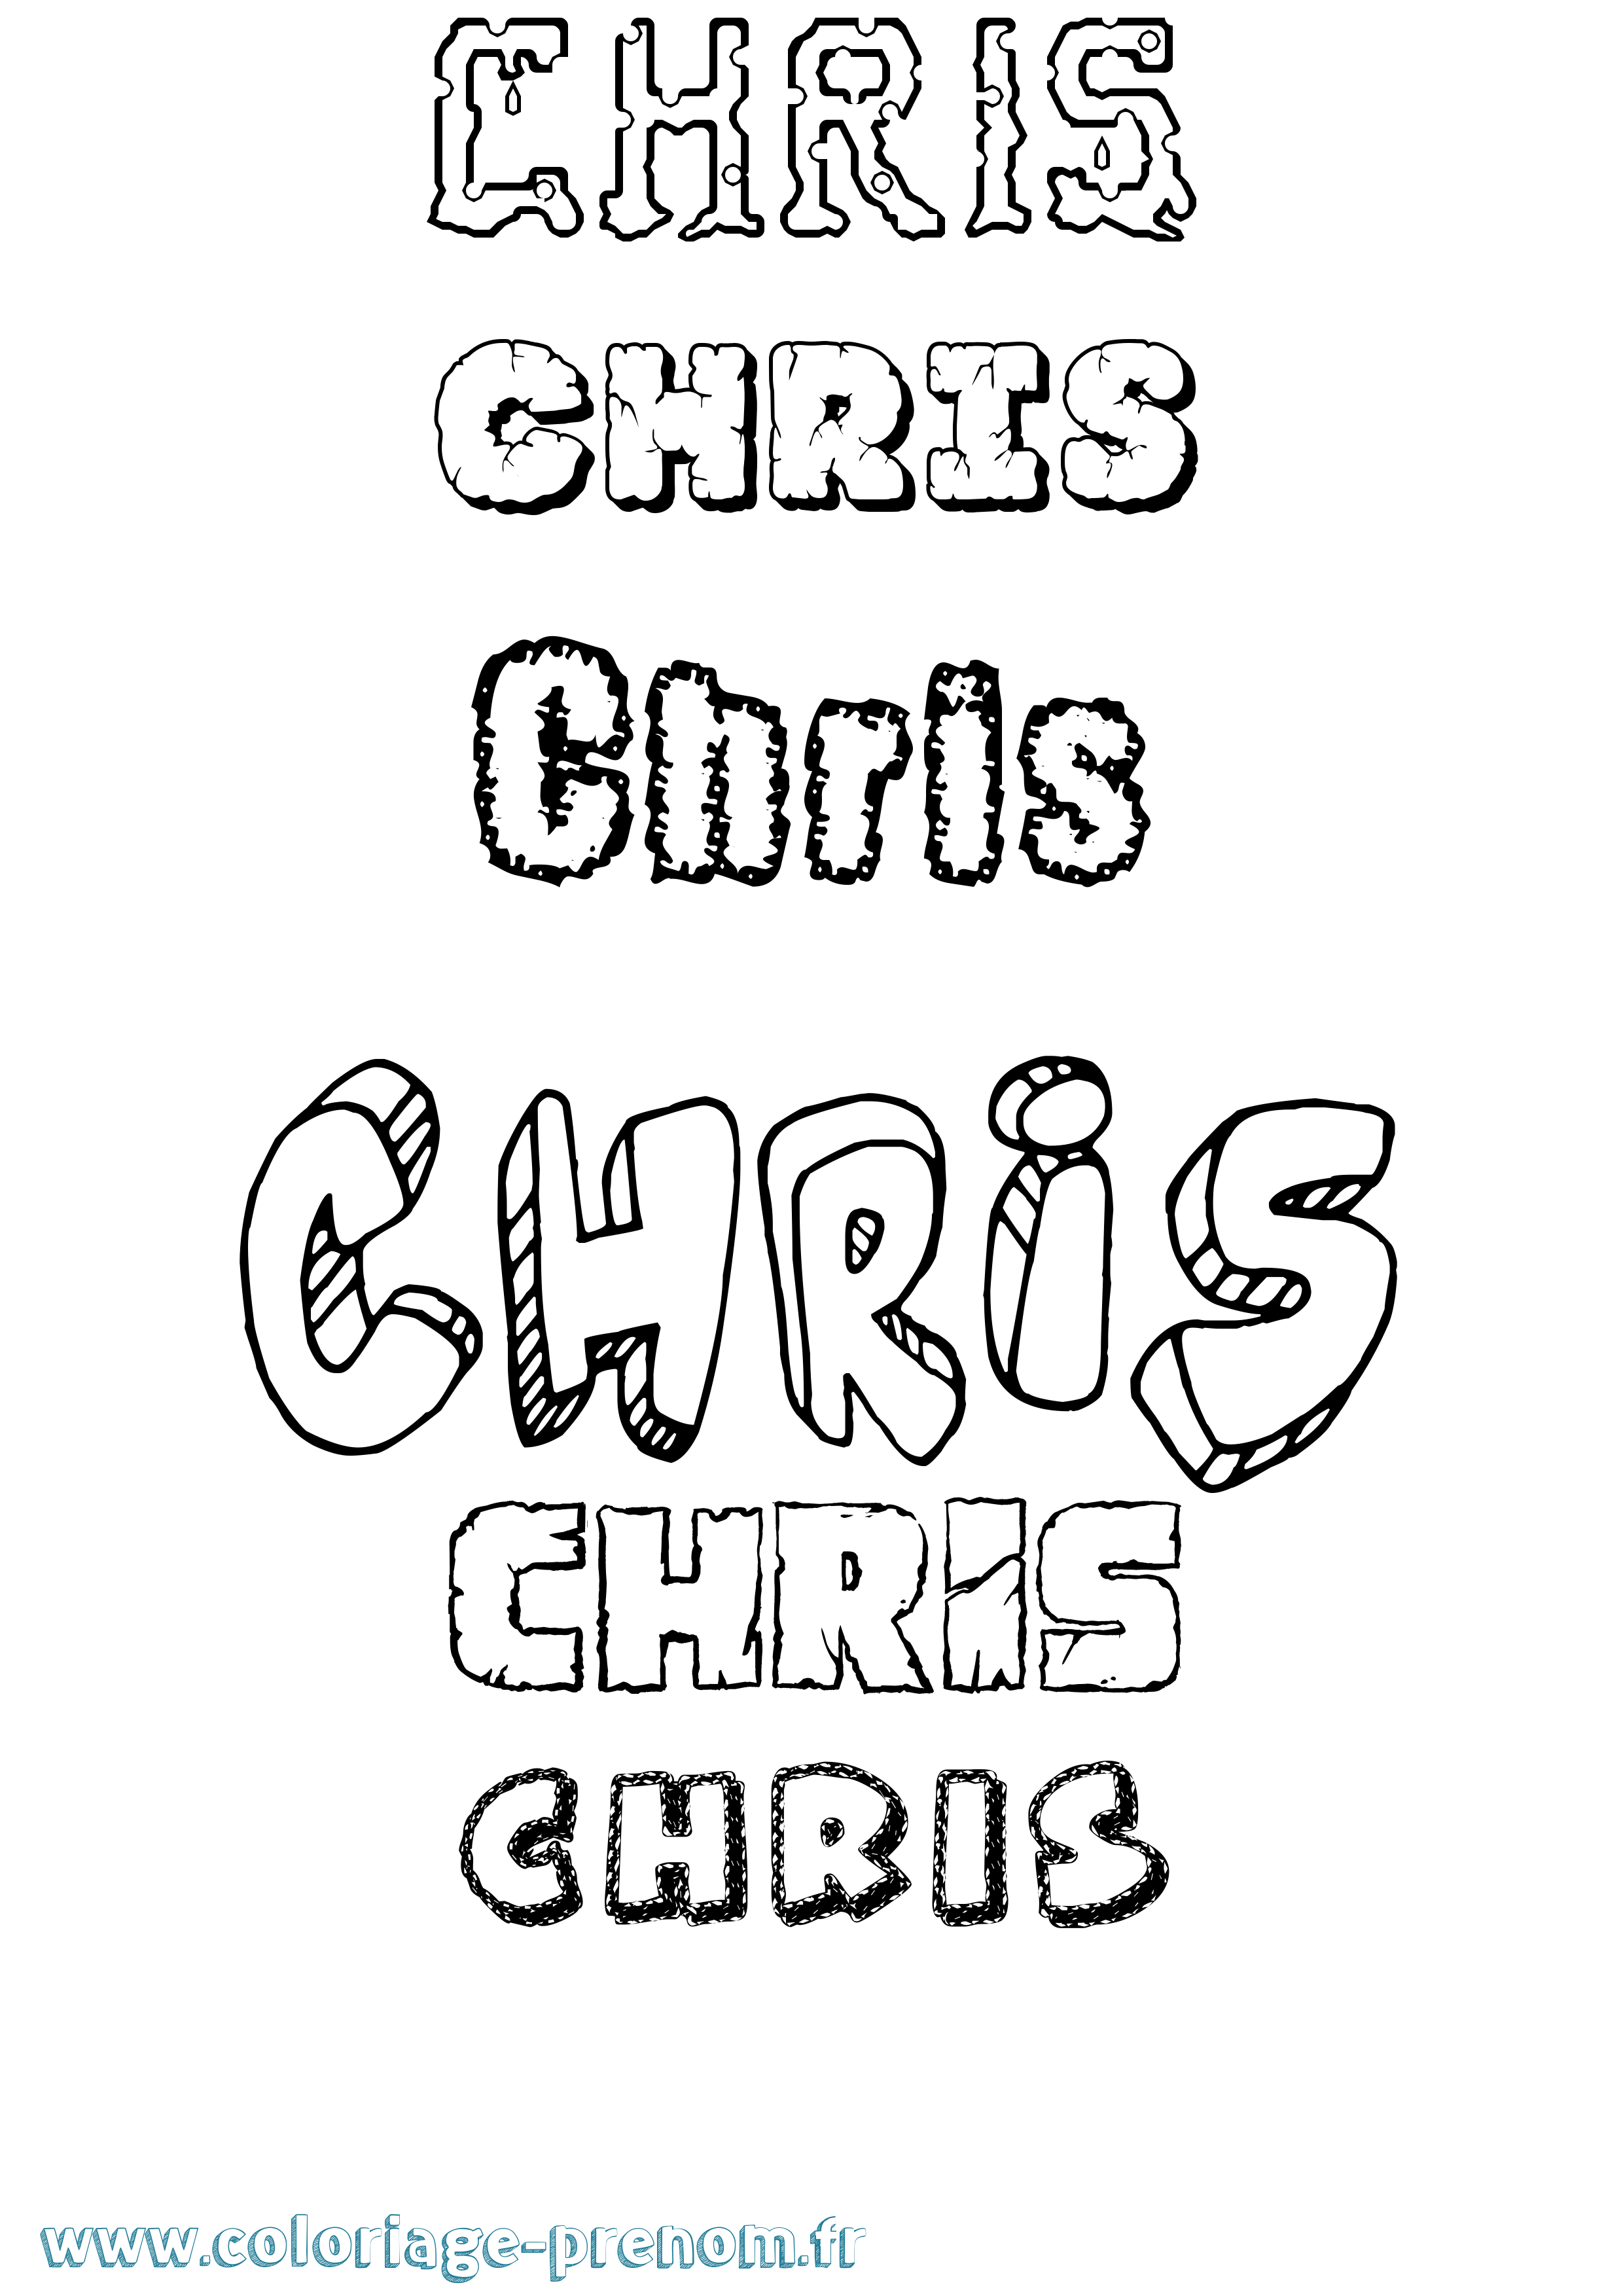 Coloriage prénom Chris